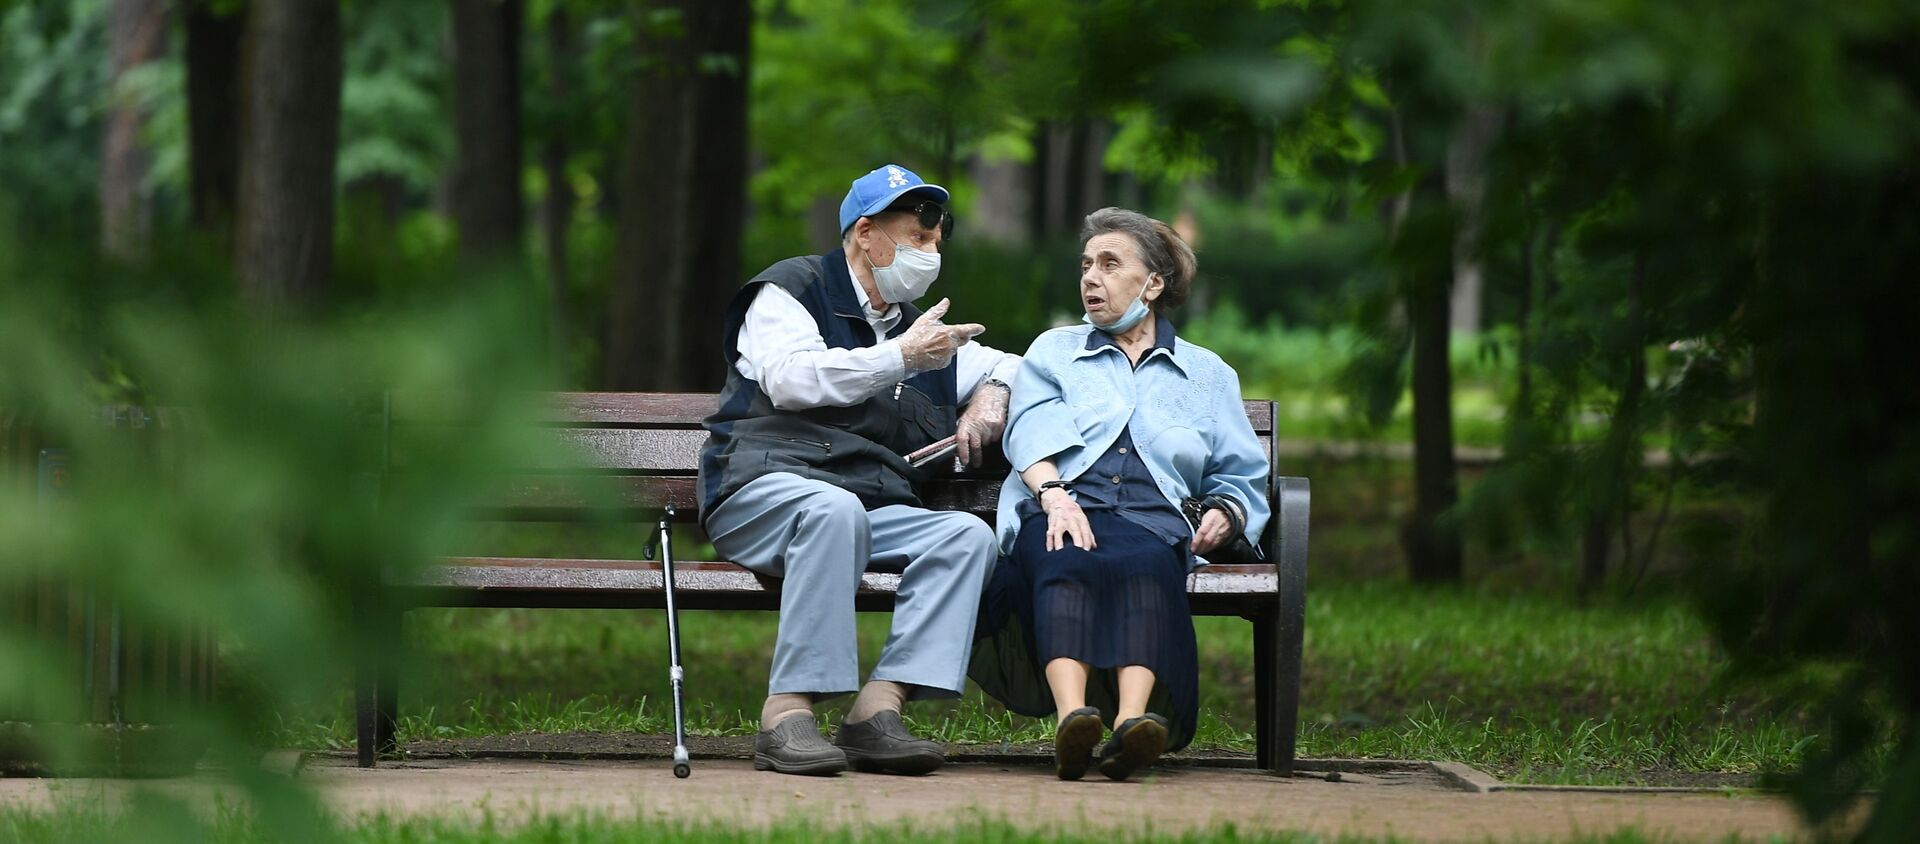 Пожилые люди отдыхают в парке - Sputnik Беларусь, 1920, 30.09.2020